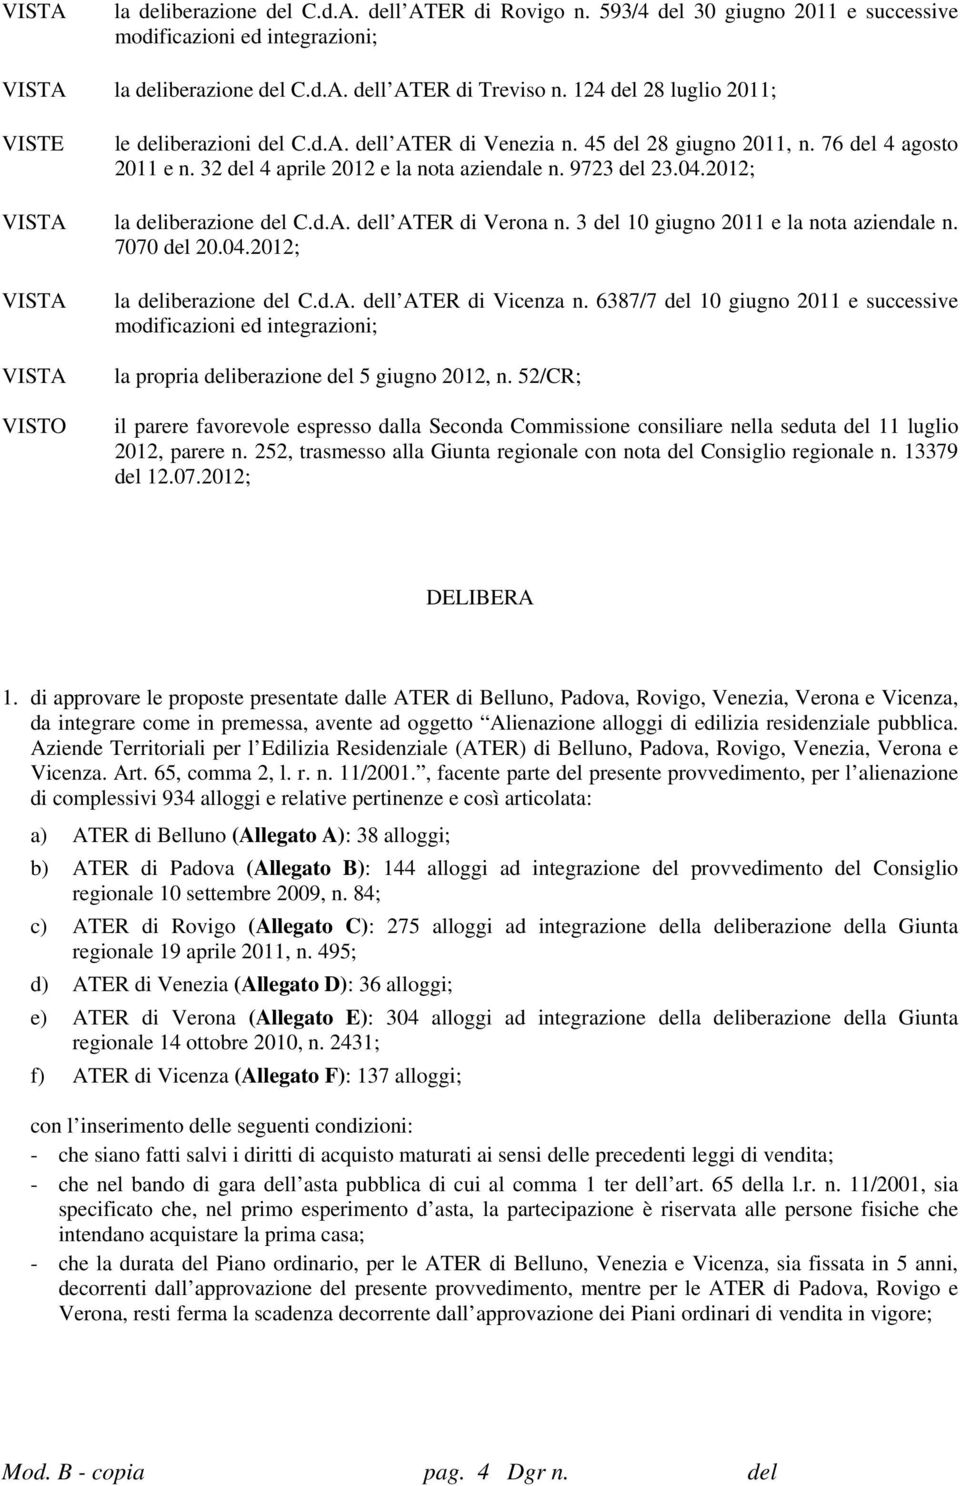 2012; VISTA la deliberazione del C.d.A. dell ATER di Verona n. 3 del 10 giugno 2011 e la nota aziendale n. 7070 del 20.04.2012; VISTA VISTA VISTO la deliberazione del C.d.A. dell ATER di Vicenza n.